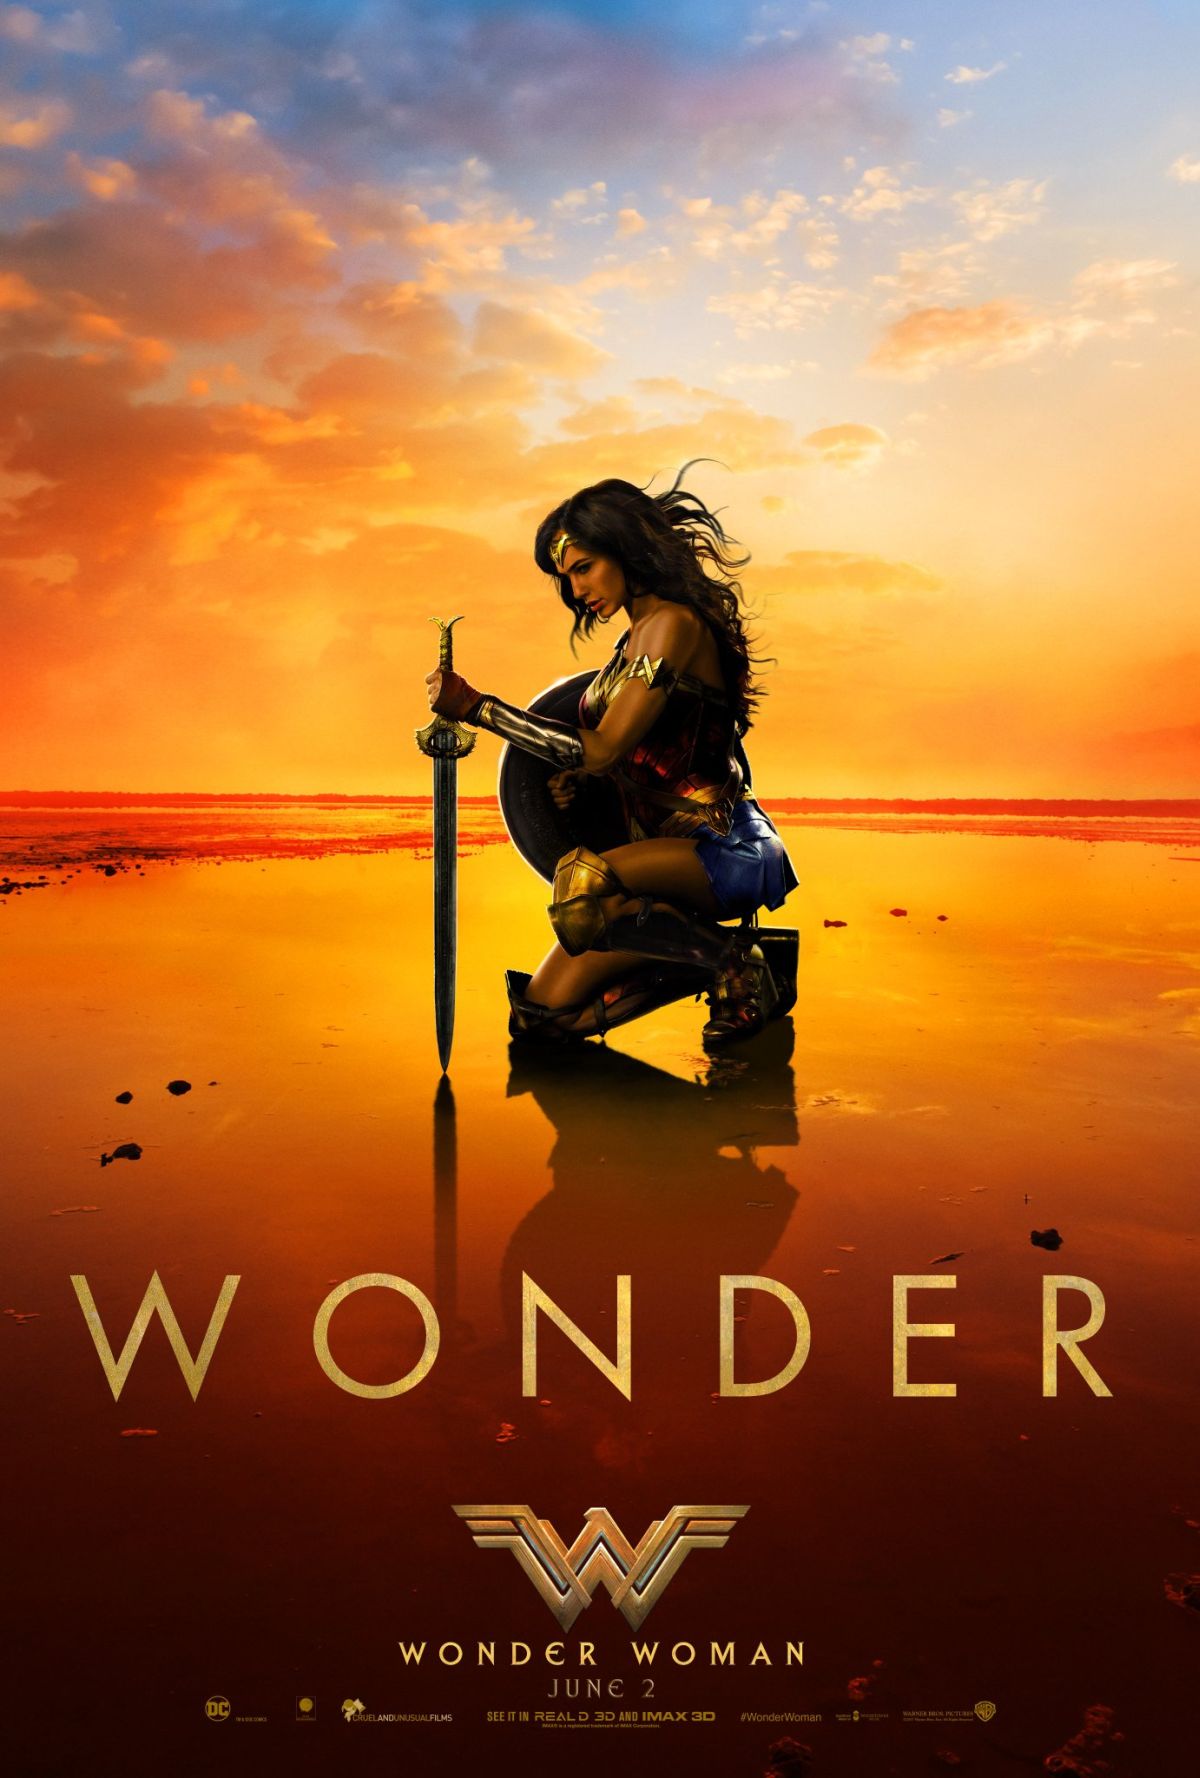 Nouveau trailer pour Wonder Woman